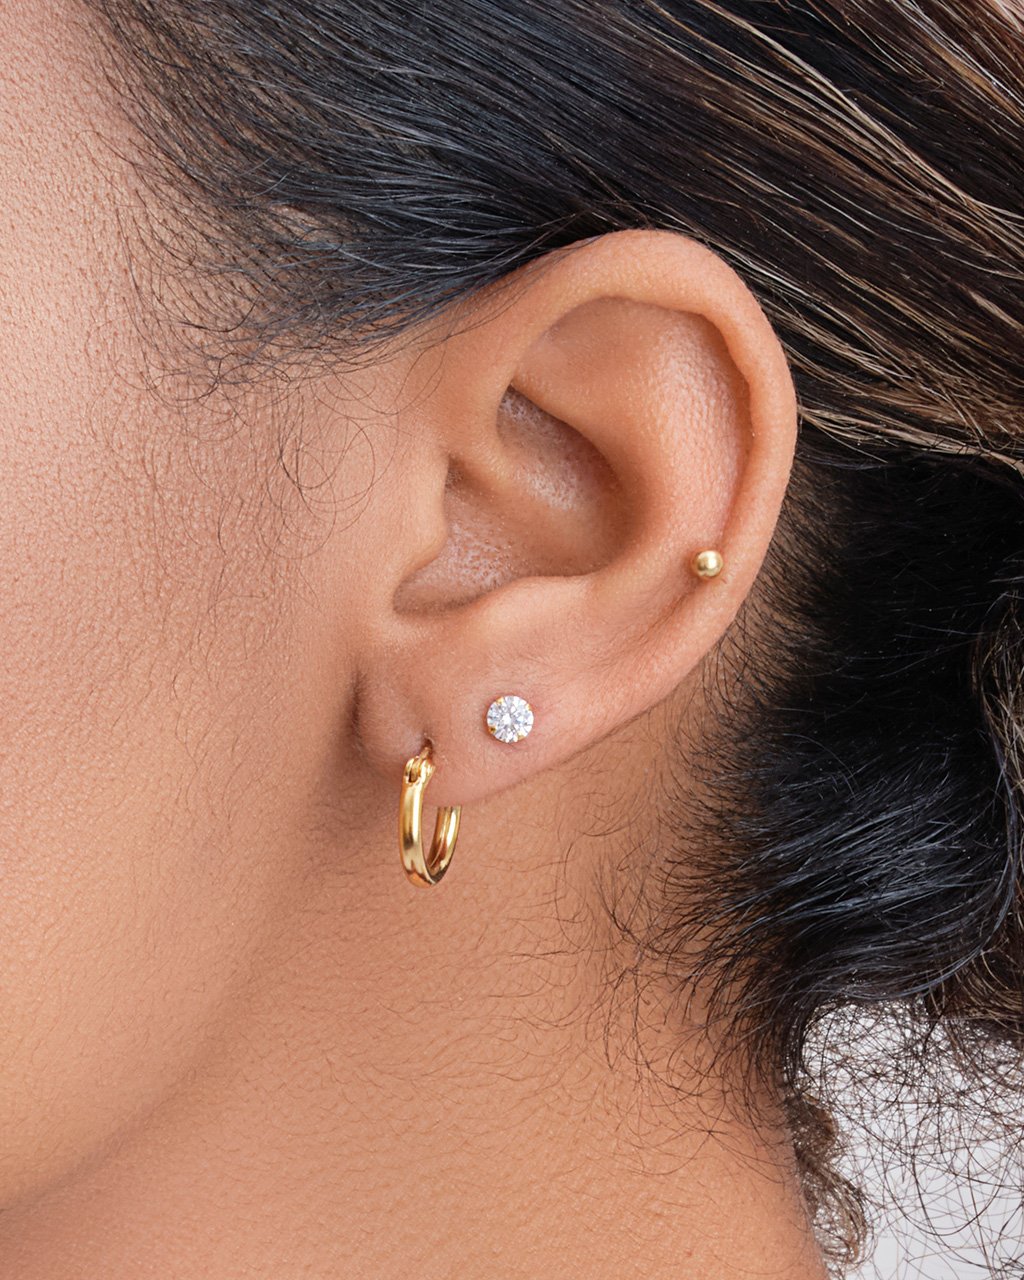 Buy Elegant CZ Double Hoop Stud, CZ Dainty Earrings, Gold Studs, Silver Stud  Earrings, 2-1 Earrings Online in India - Etsy